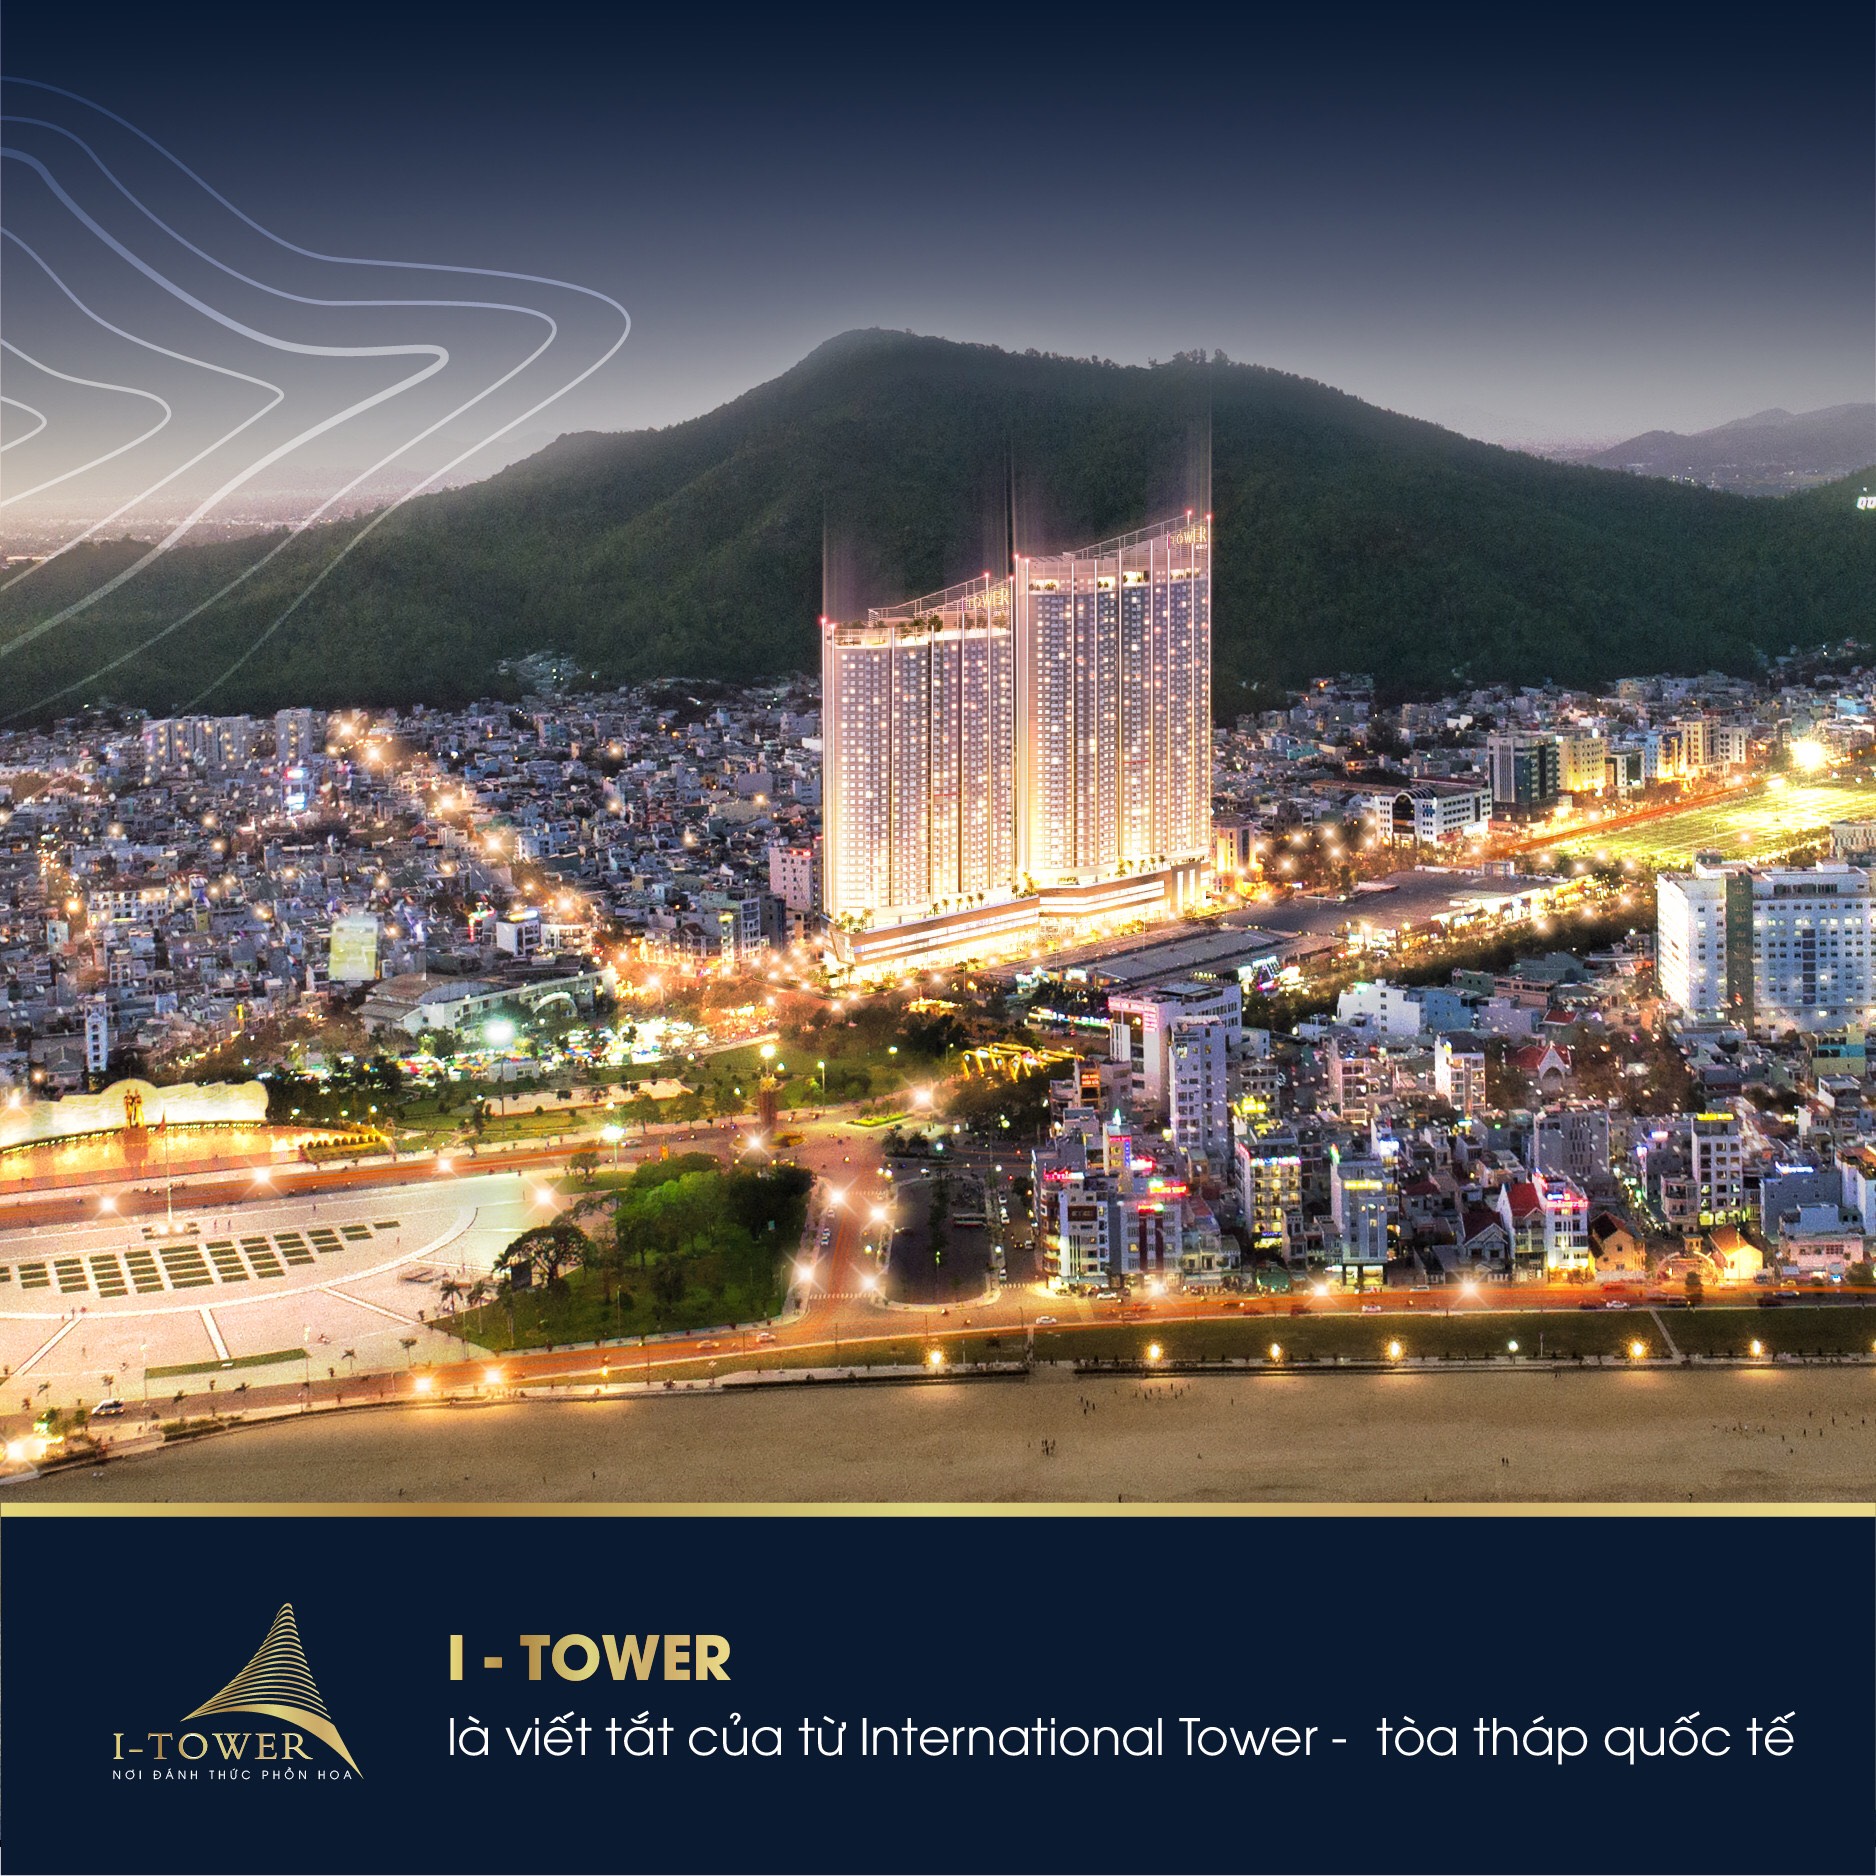 Cần bán Căn hộ chung cư dự án I-Tower Quy Nhơn, Diện tích 58m², Giá 39 Trăm/m² - LH: 0332168585 3